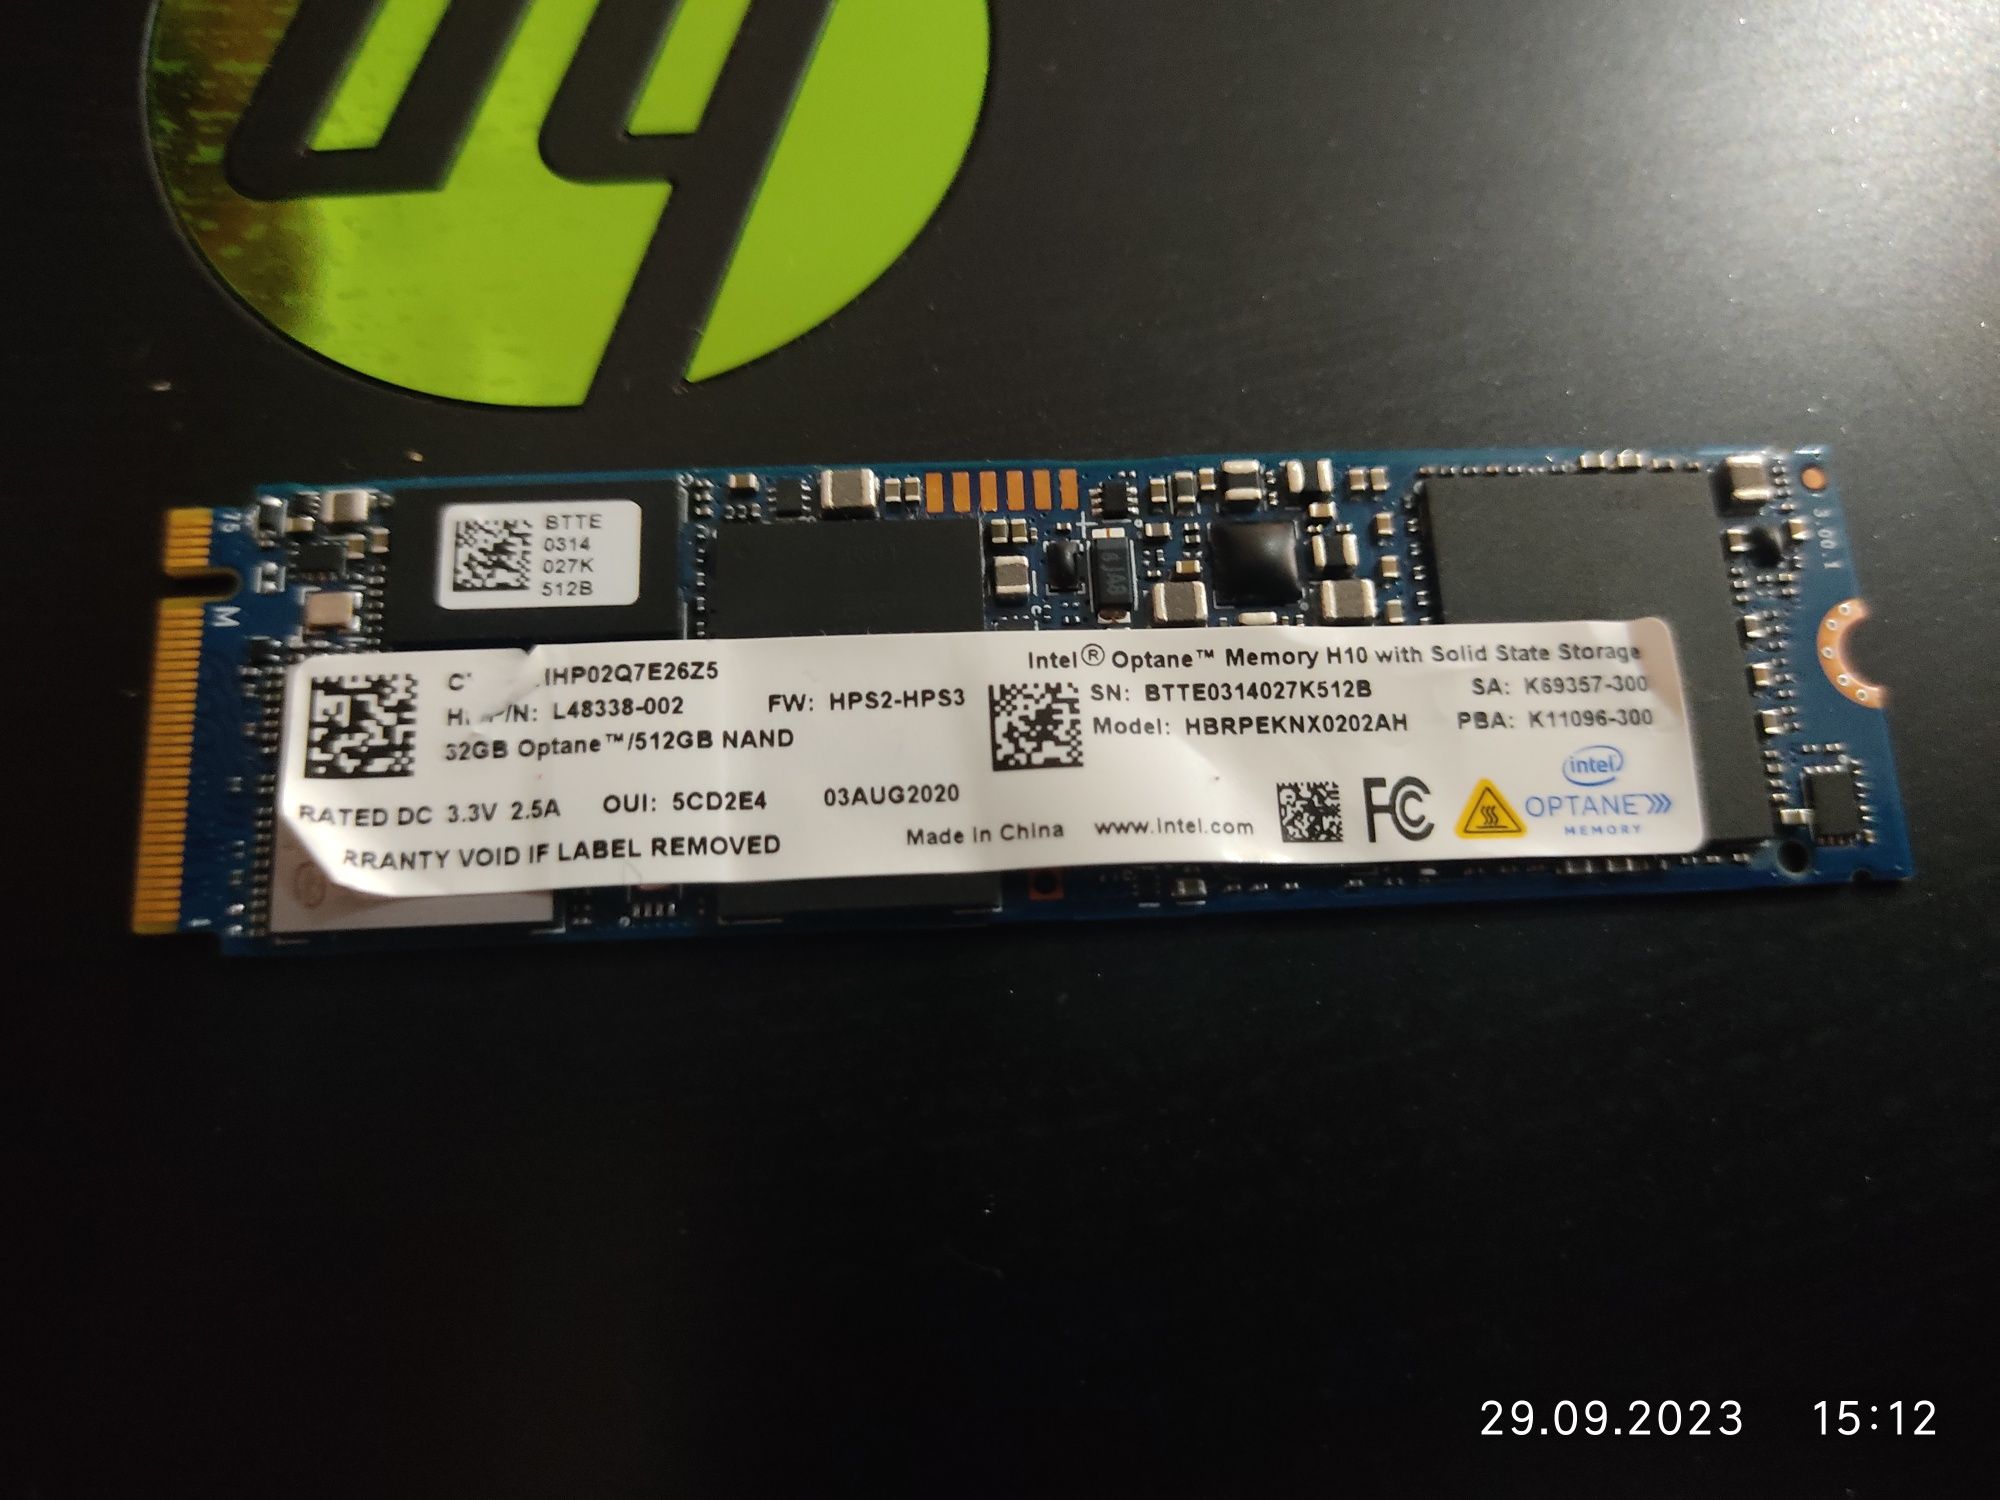 32GB Optane Memory H10 Plus SSD 512GB NVME